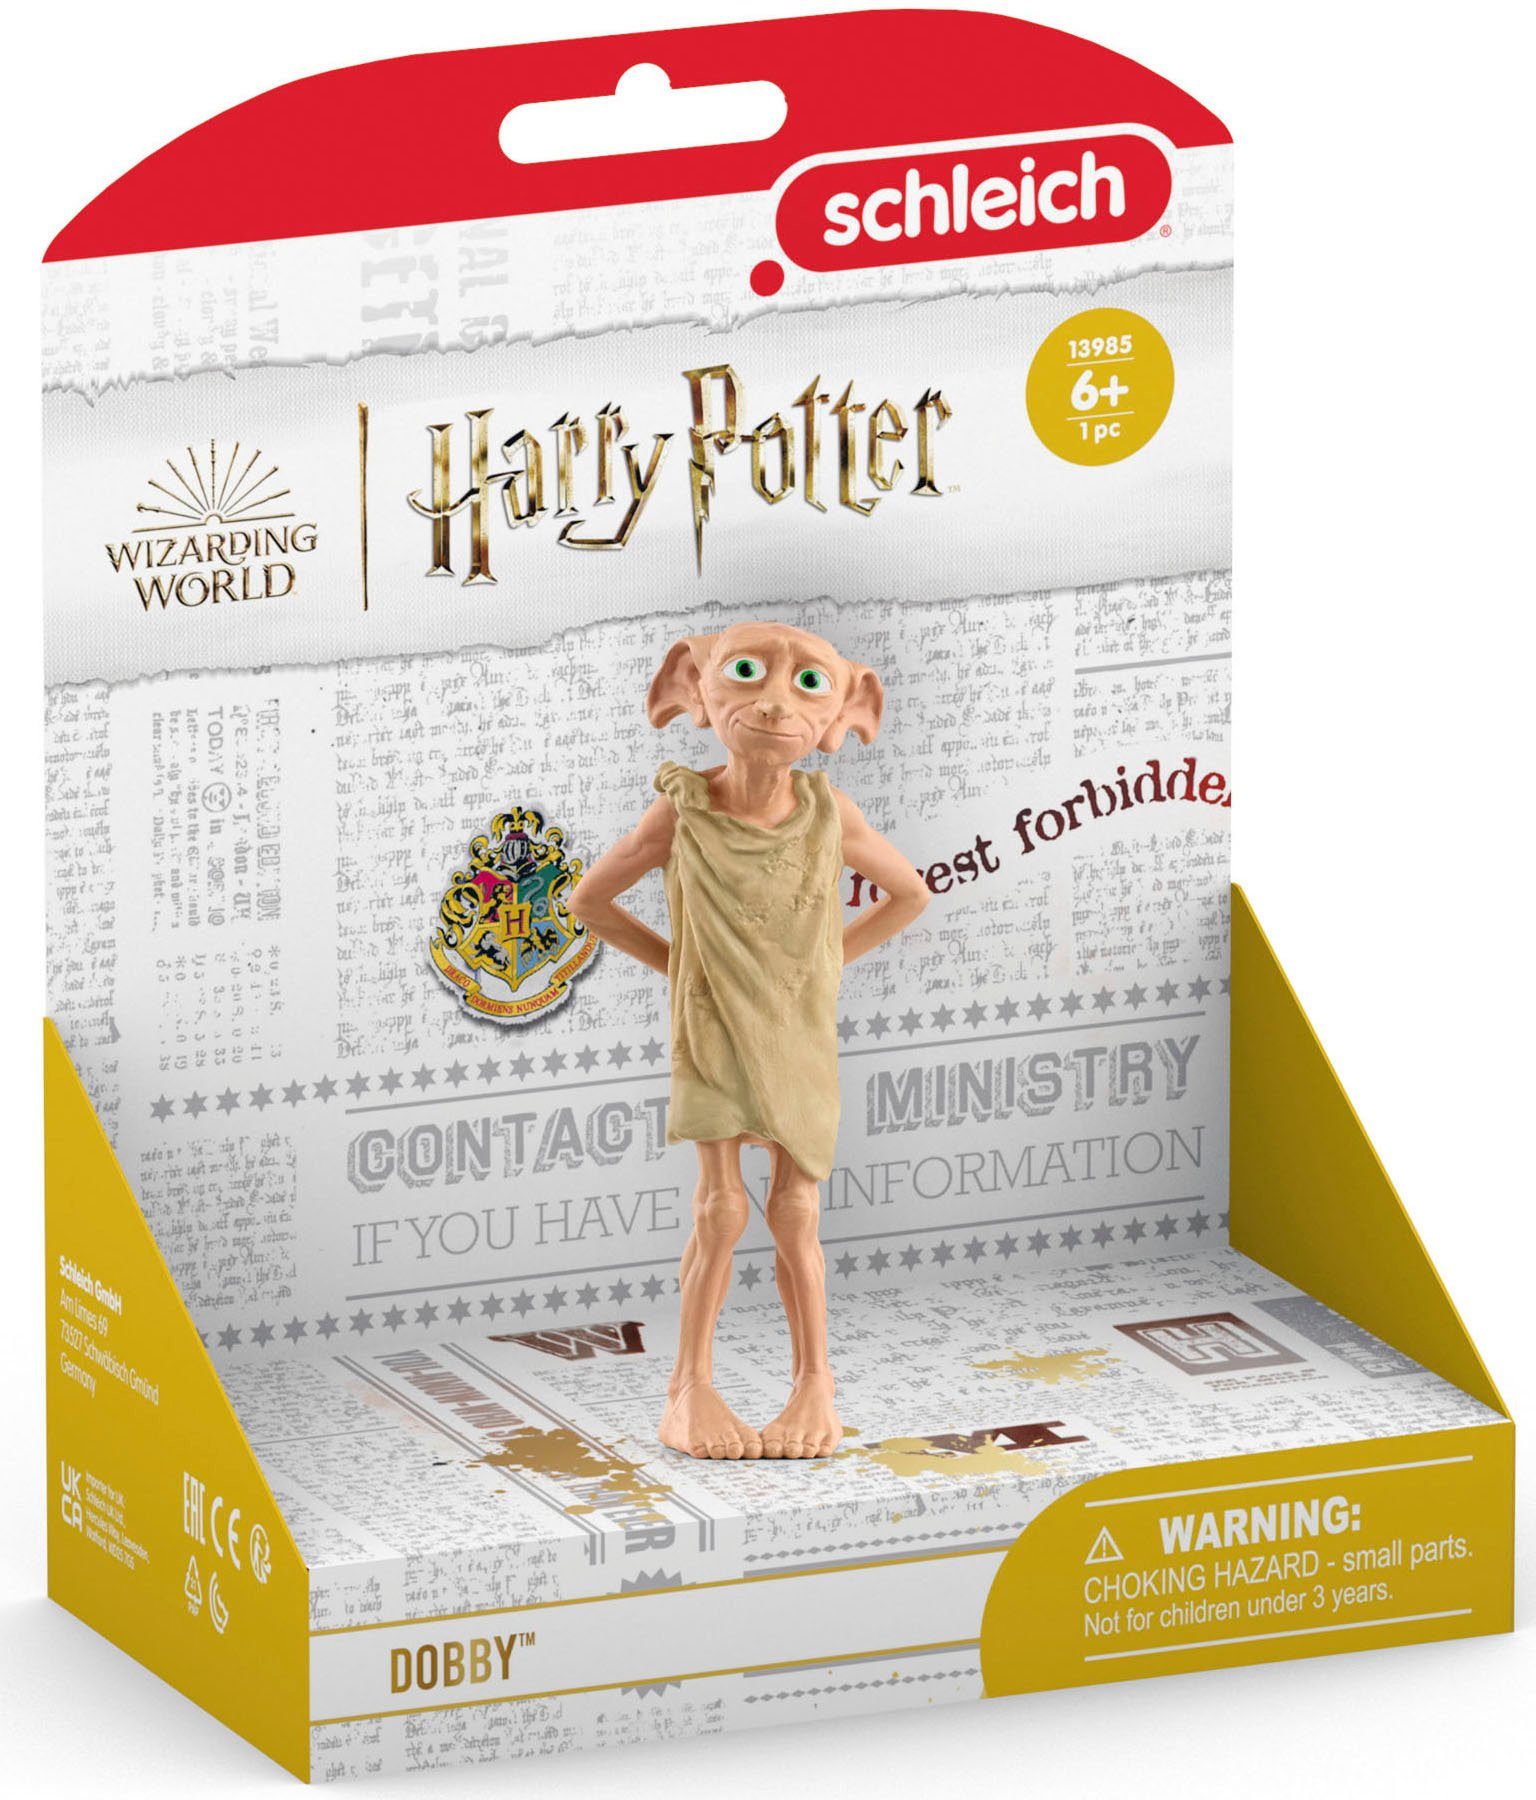 Harry WORLD, Made Spielfigur (13985), Schleich® WIZARDING in Europe Dobby™ Potter™,